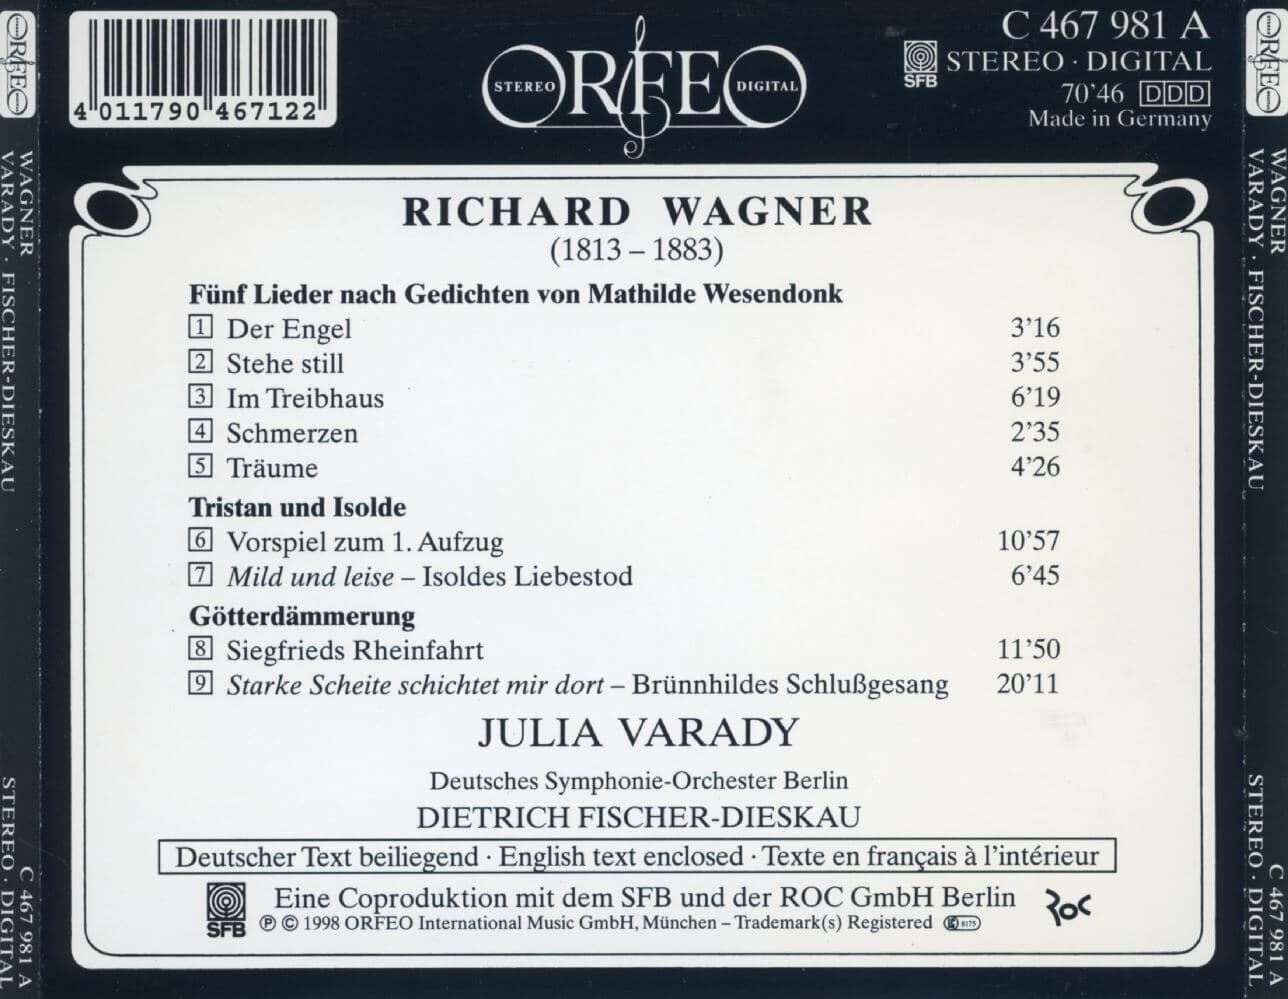 율리아 바라디 - Julia Varady - Wagner 5 Lieder (베젠동크 가곡) [독일발매]